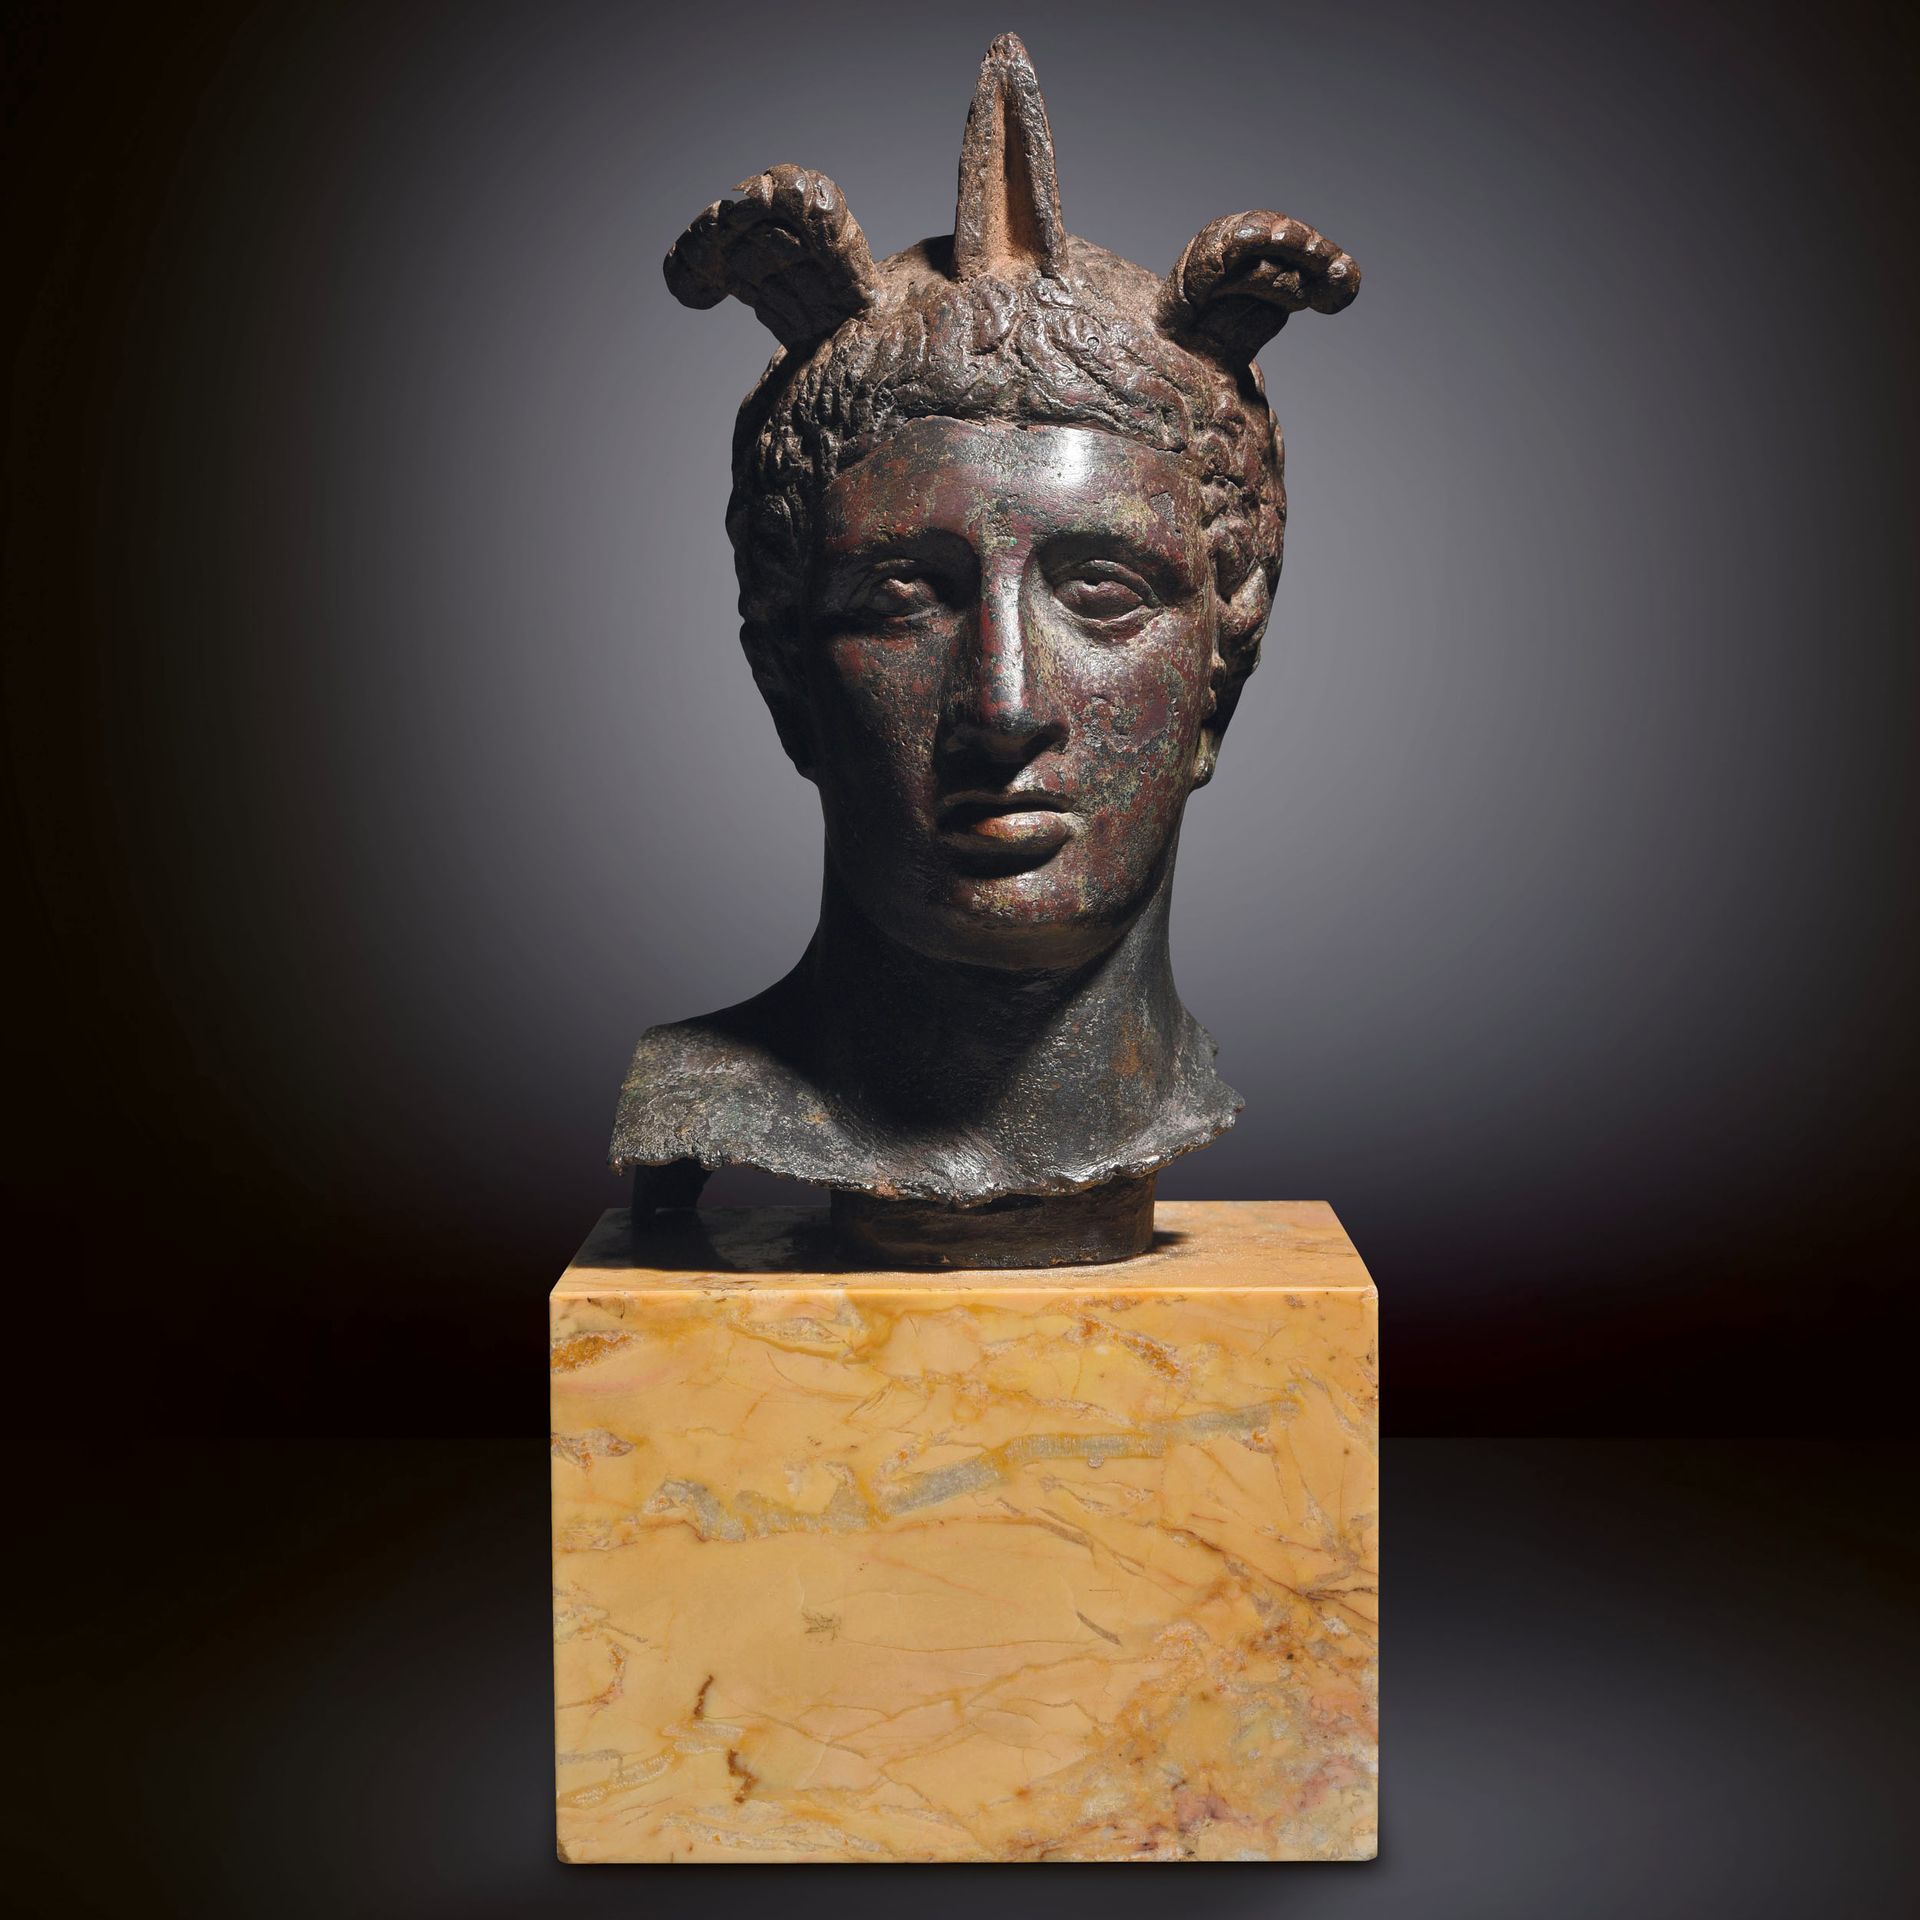 Null BUSTO DEL DIOS MERCURIO

Arte romano, siglos I - II d.C. 

Bronce con pátin&hellip;